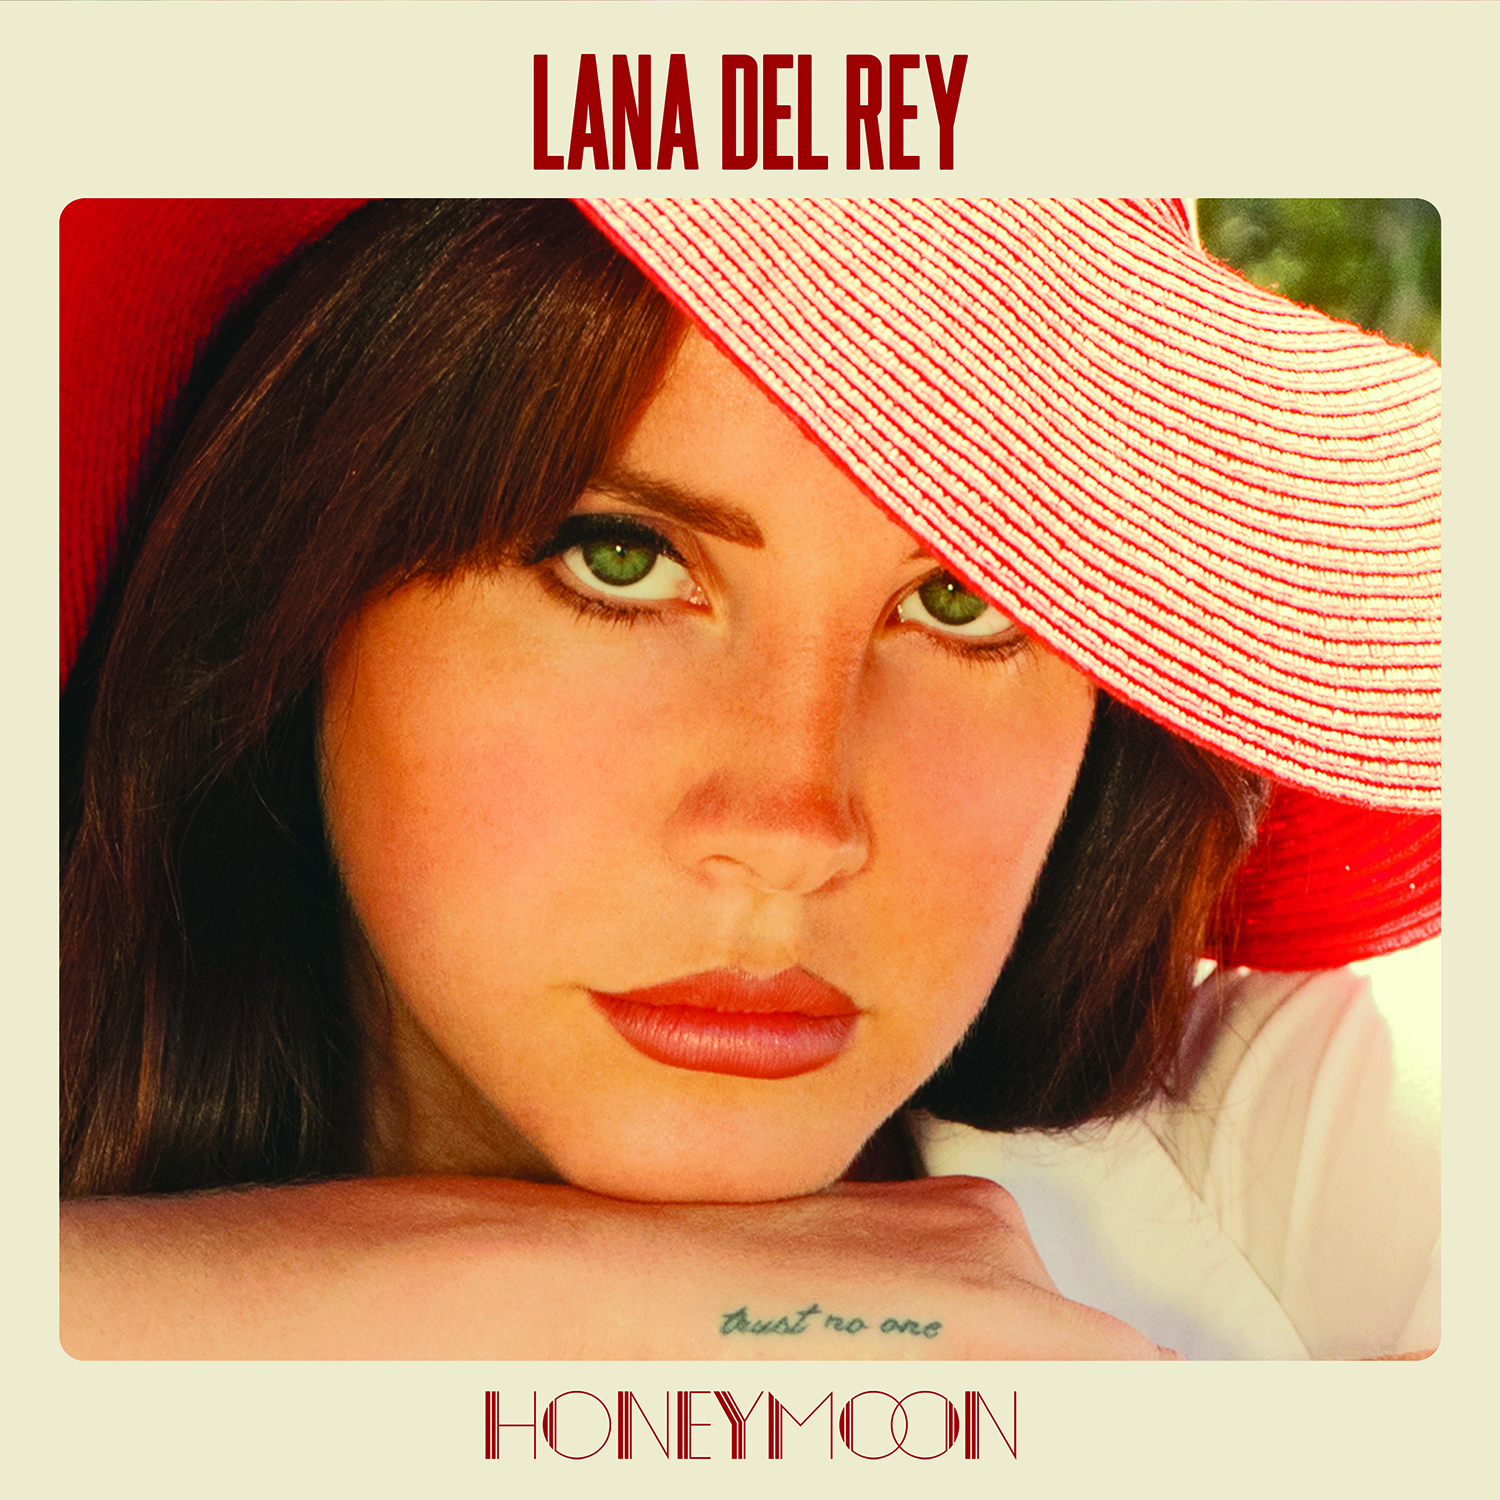 Hear Lana Del Rey's Swirling, Brand New Single 'Honeymoon'